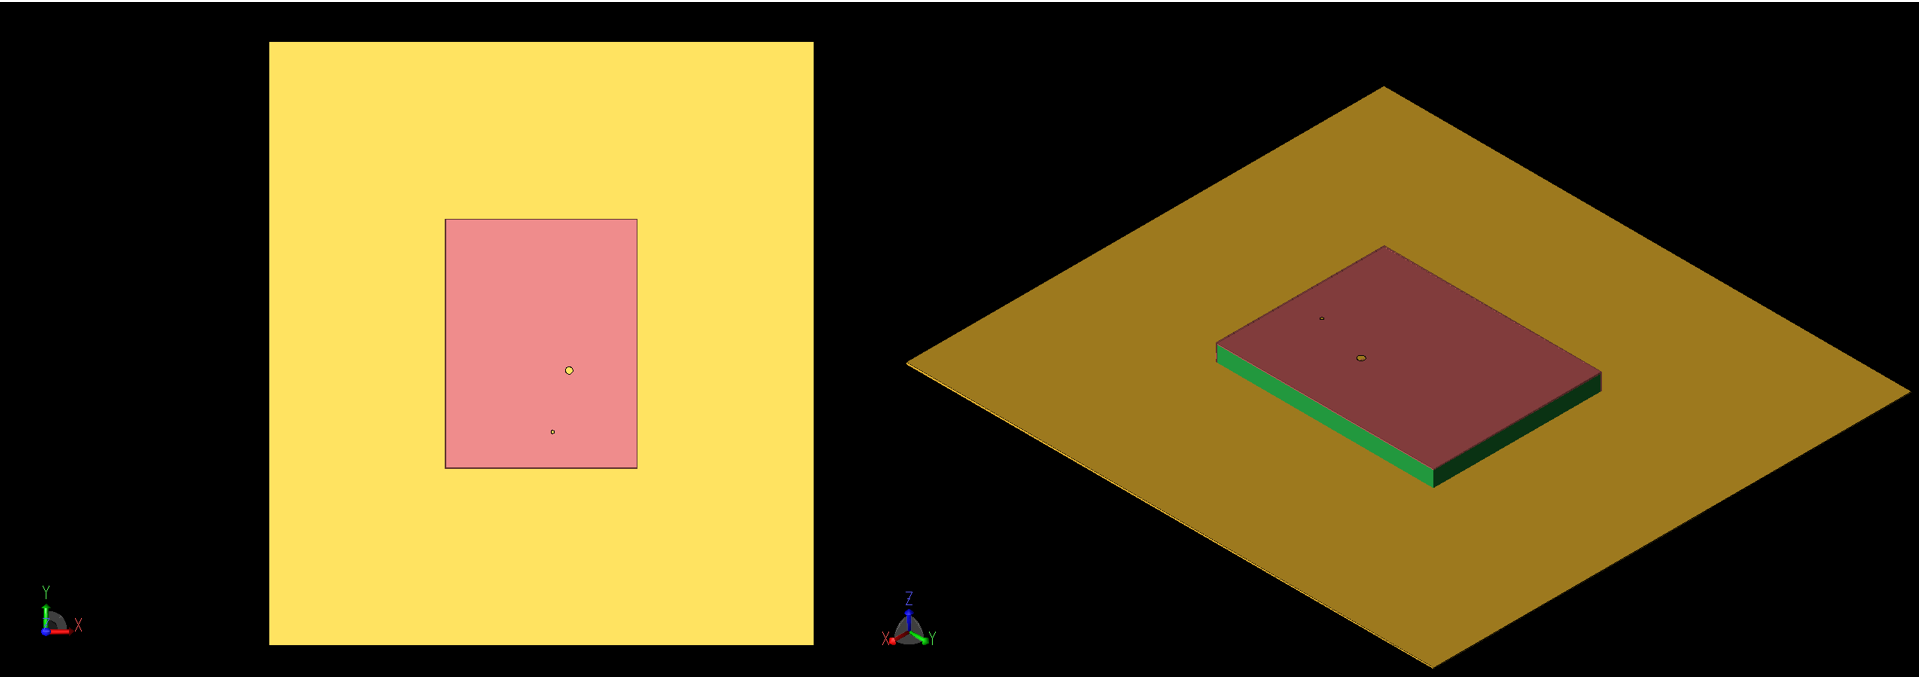 Abbildung 1: Die Geometrie der Patch-Antenne ist von oben (links, 1a) und im Winkel (rechts, 1b) dargestellt. Die koaxiale Einspeisung und das Via sind als große und kleine Kreise auf der Oberseite des Patches sichtbar. Die -X- und -Y-Seiten des Patches sind mit der Grundplatte kurzgeschlossen.